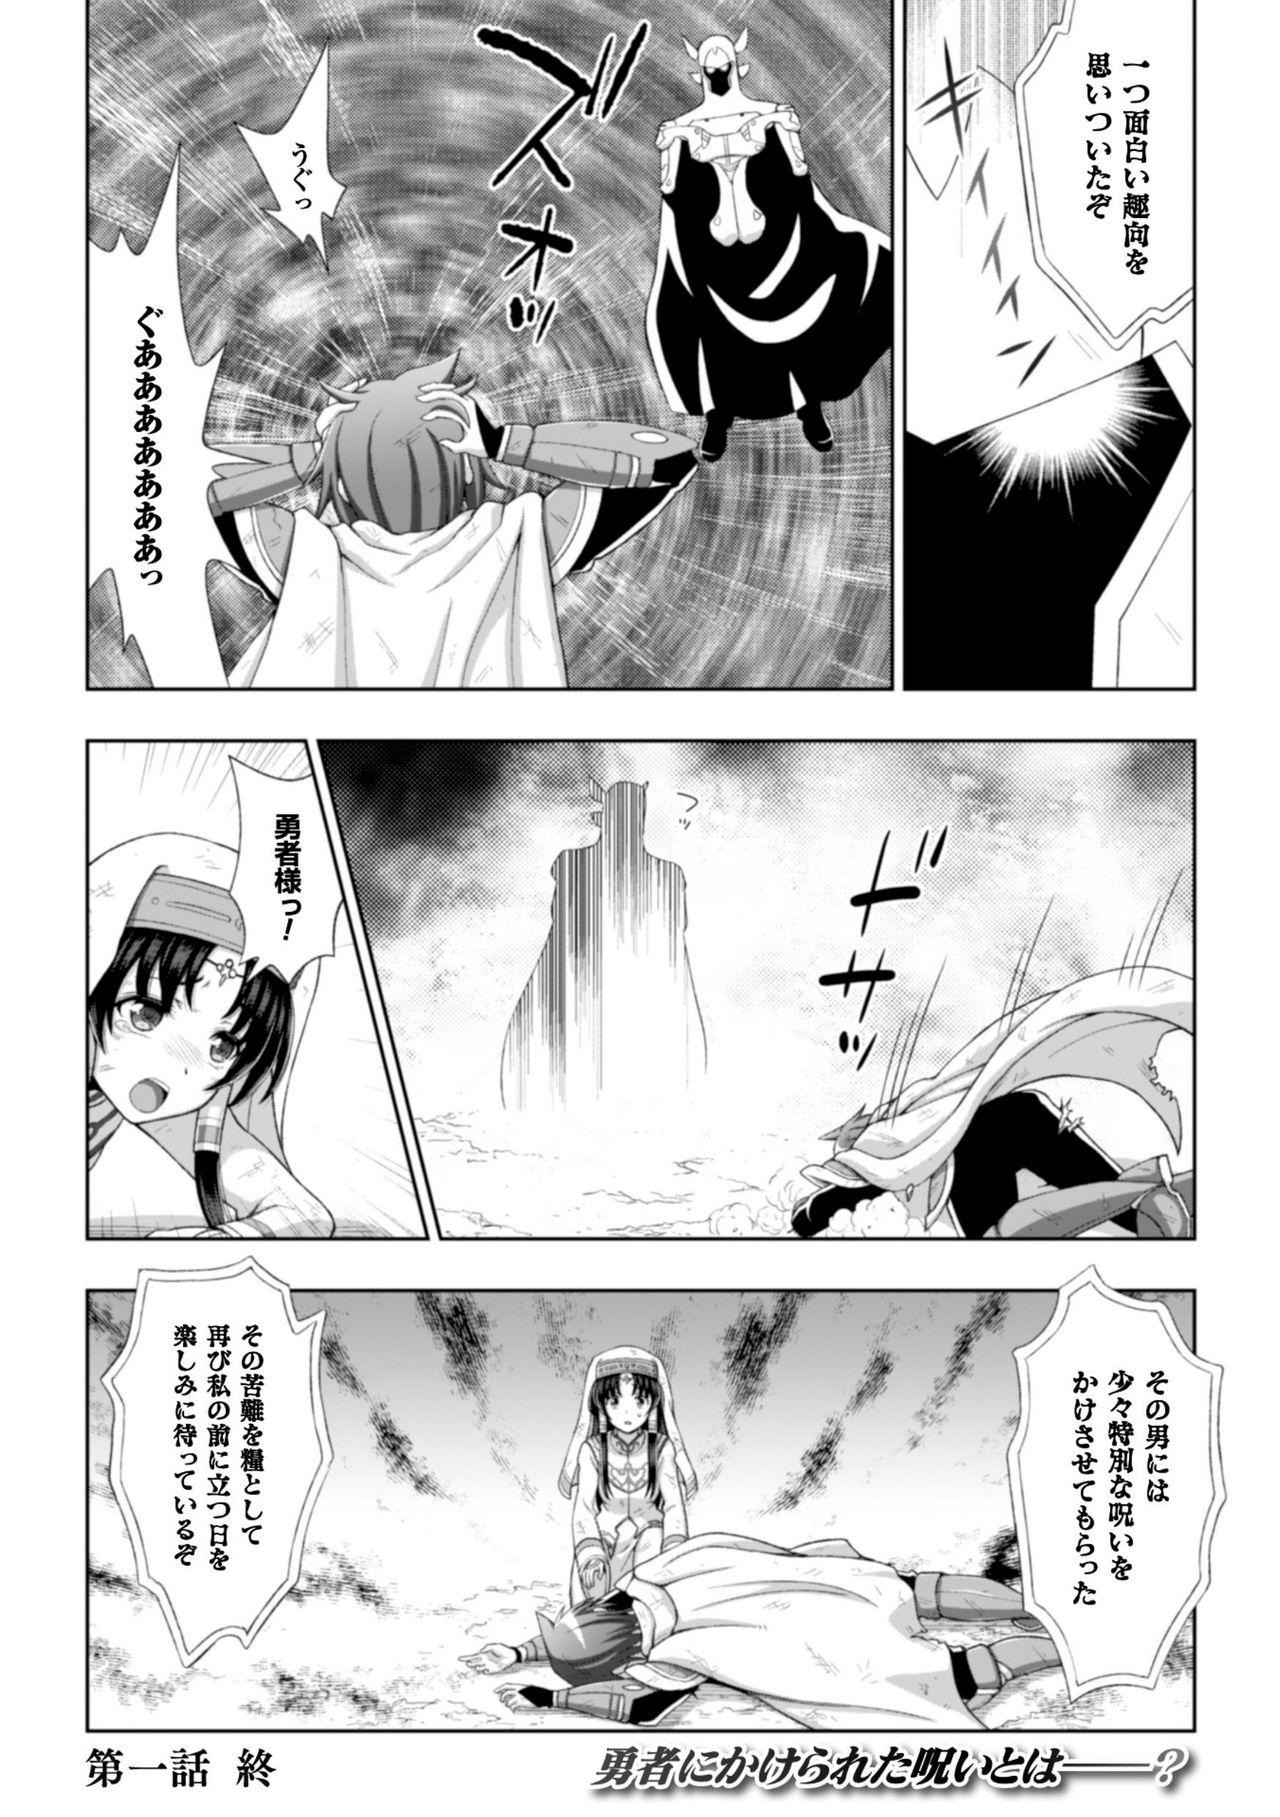 Seigi no Heroine Kangoku File Vol. 8 25